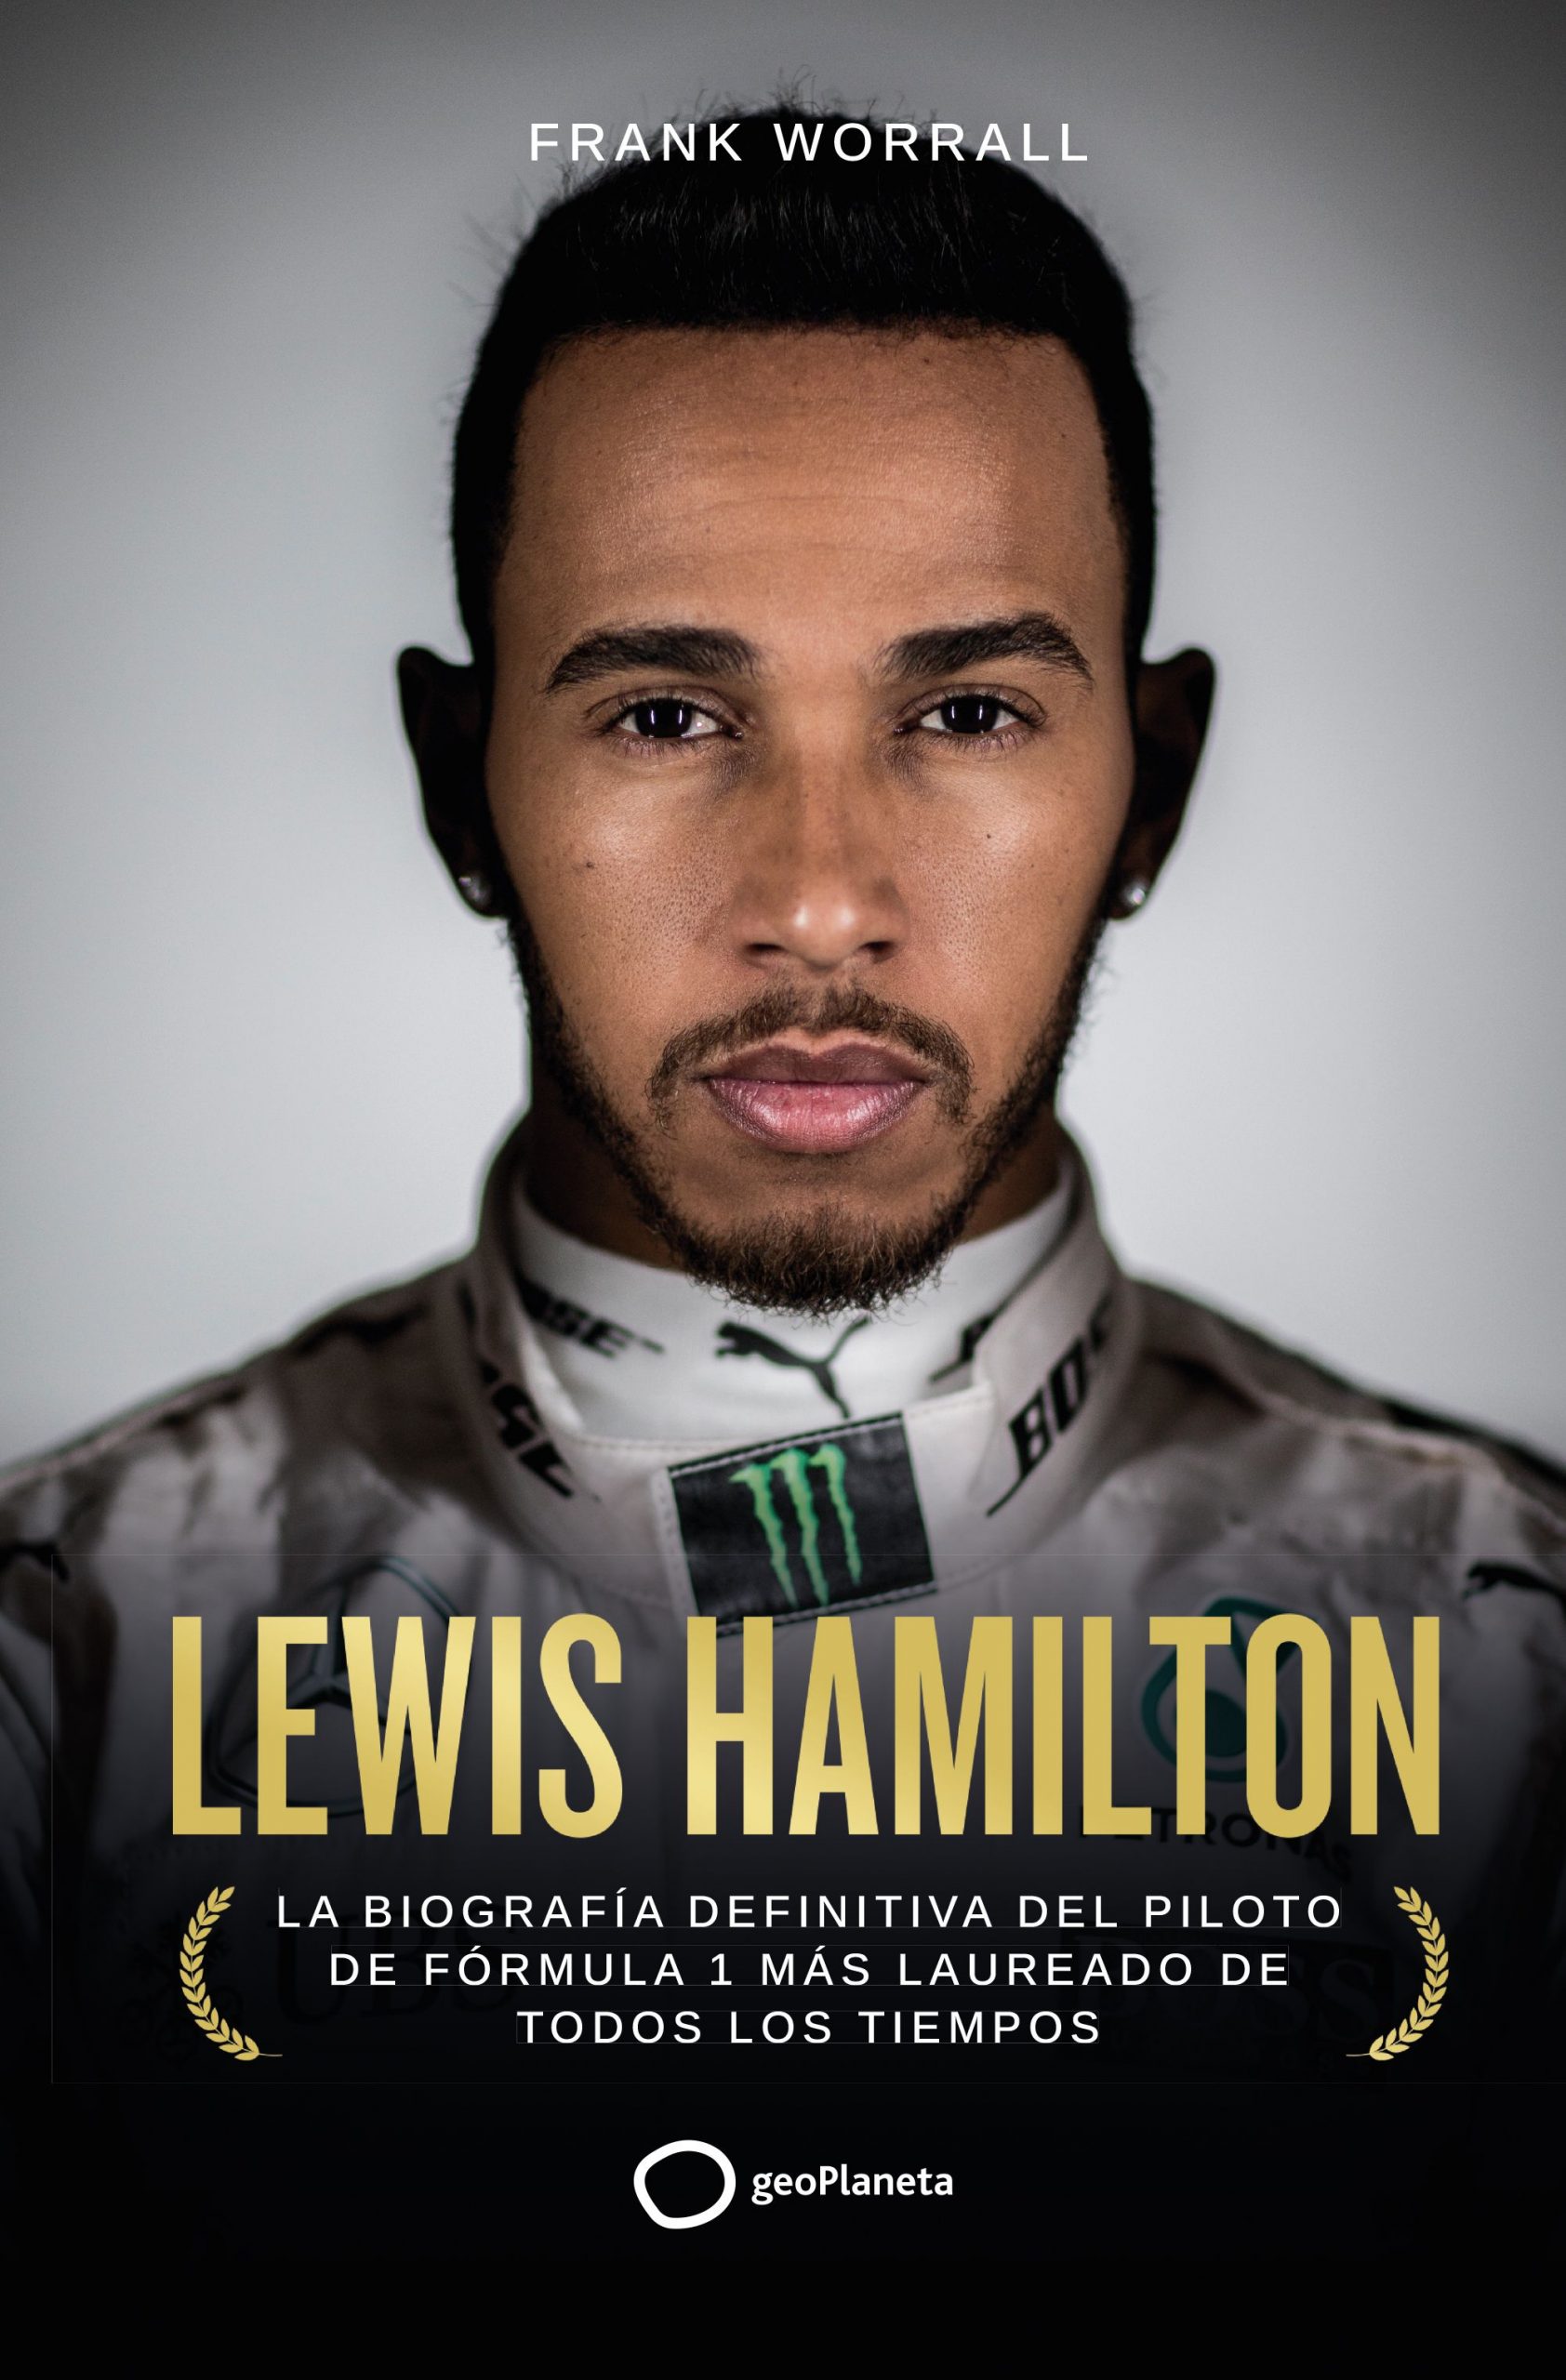 Portada de la biografía de Lewis Hamilton/Foto: frank-worrall